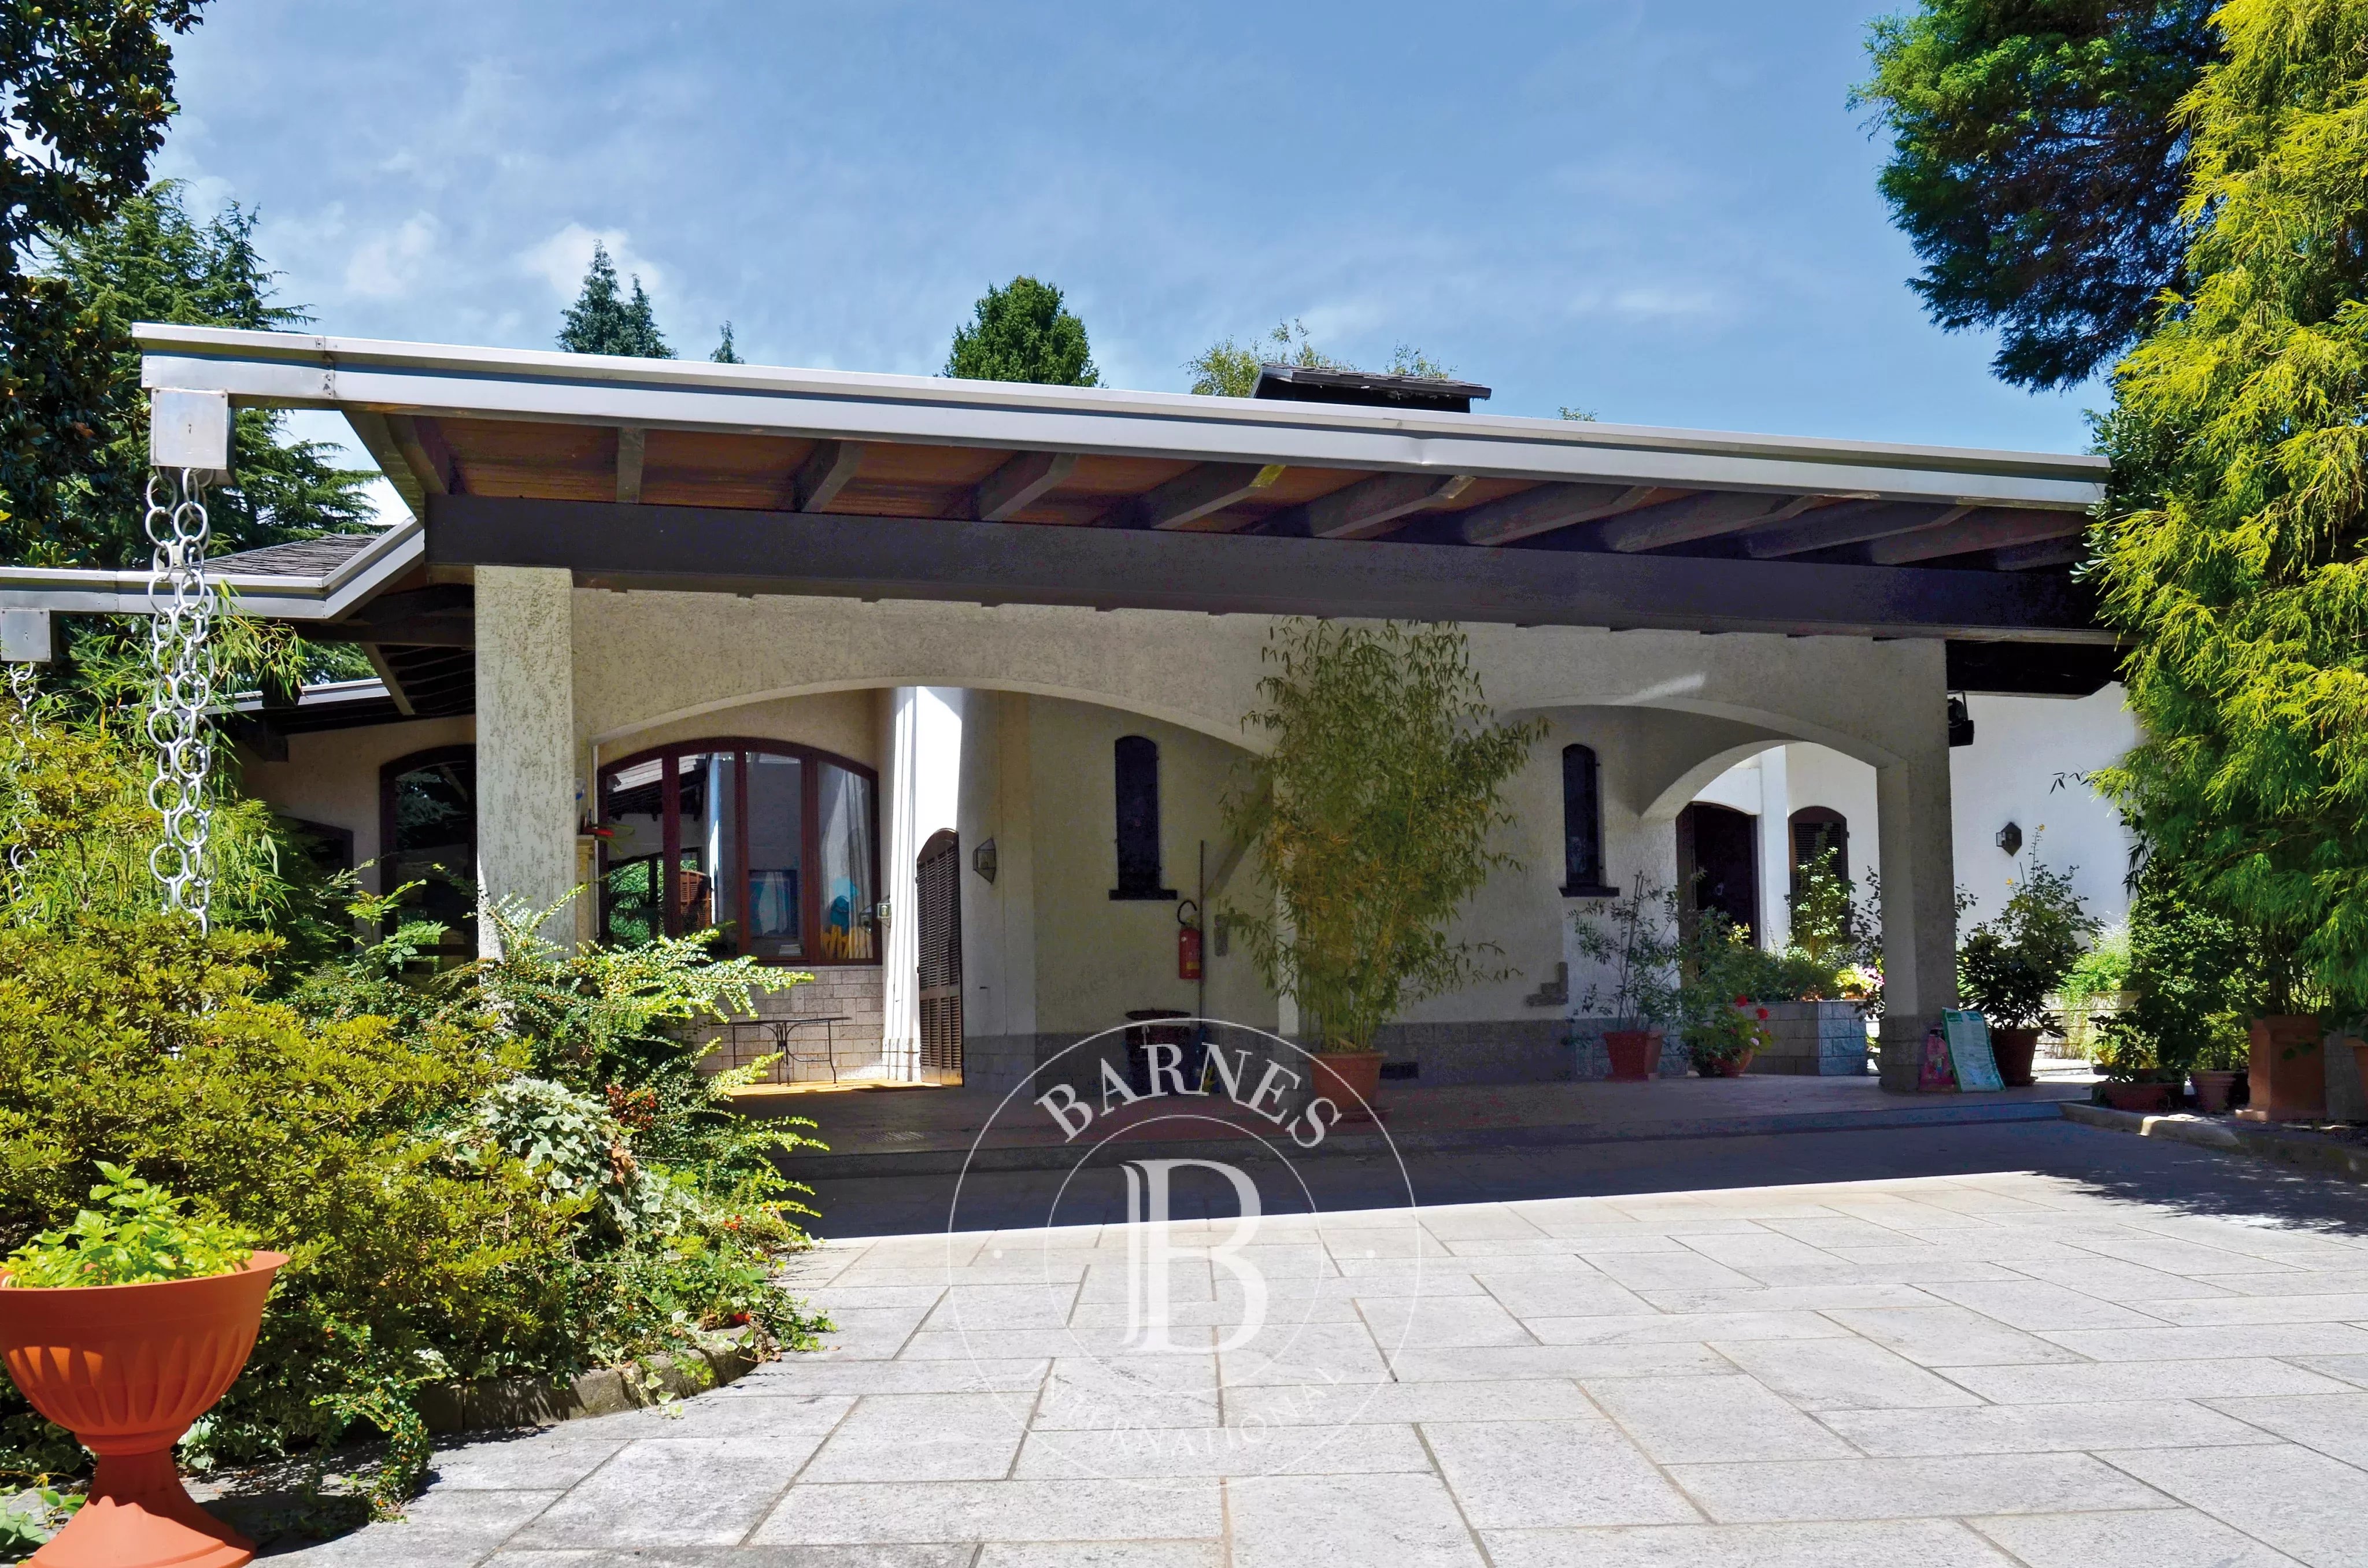 Prestigious villa with indoor pool, stable and park. Borgomanero. Area Lakes: Maggiore and d'Orta - picture 6 title=